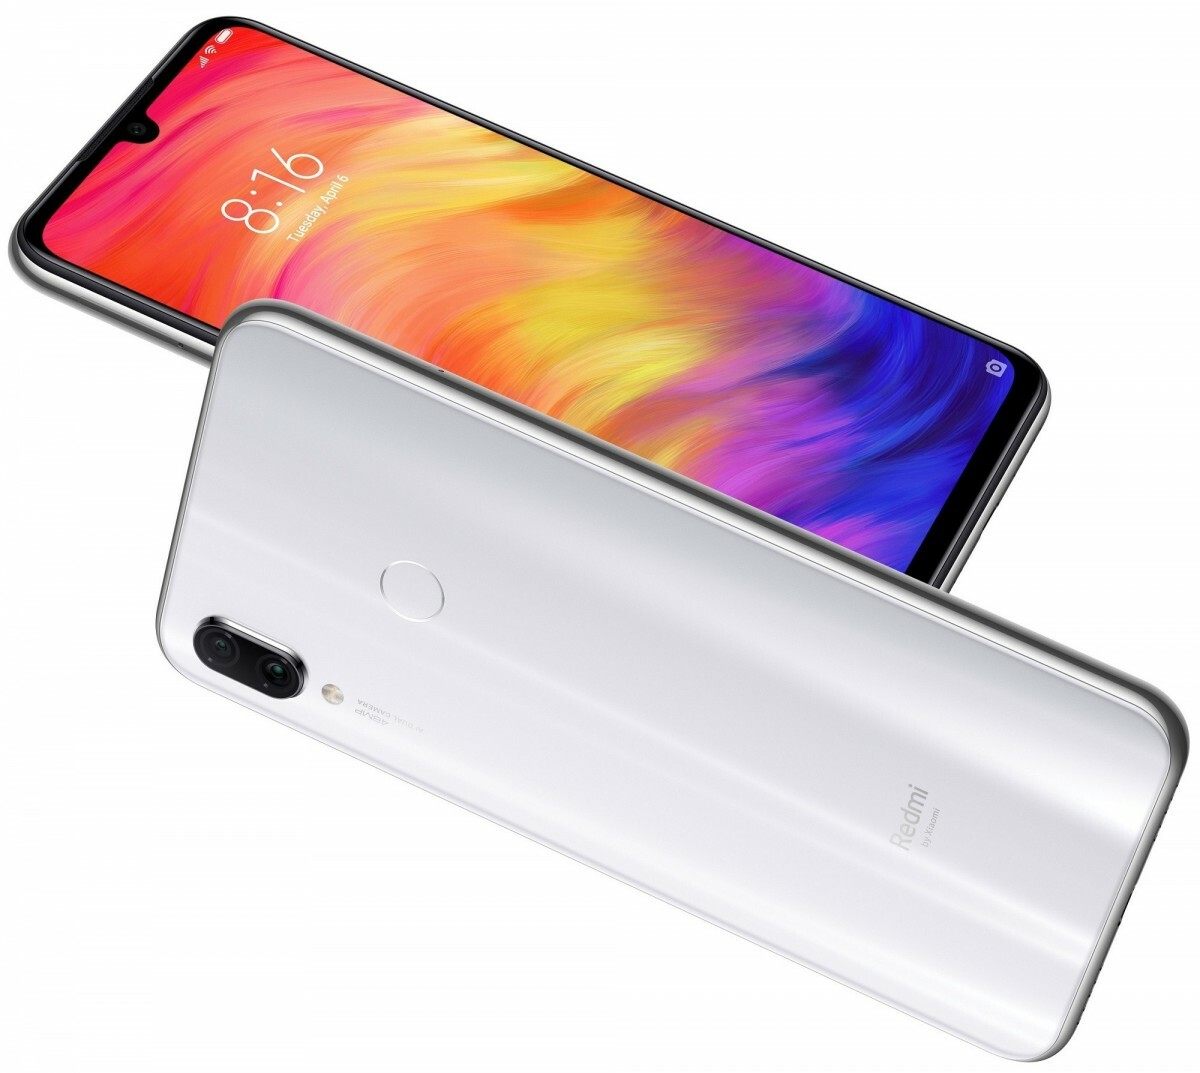 GSM Xiaomi Redmi Note 7 / 4Gb / 64Gb /